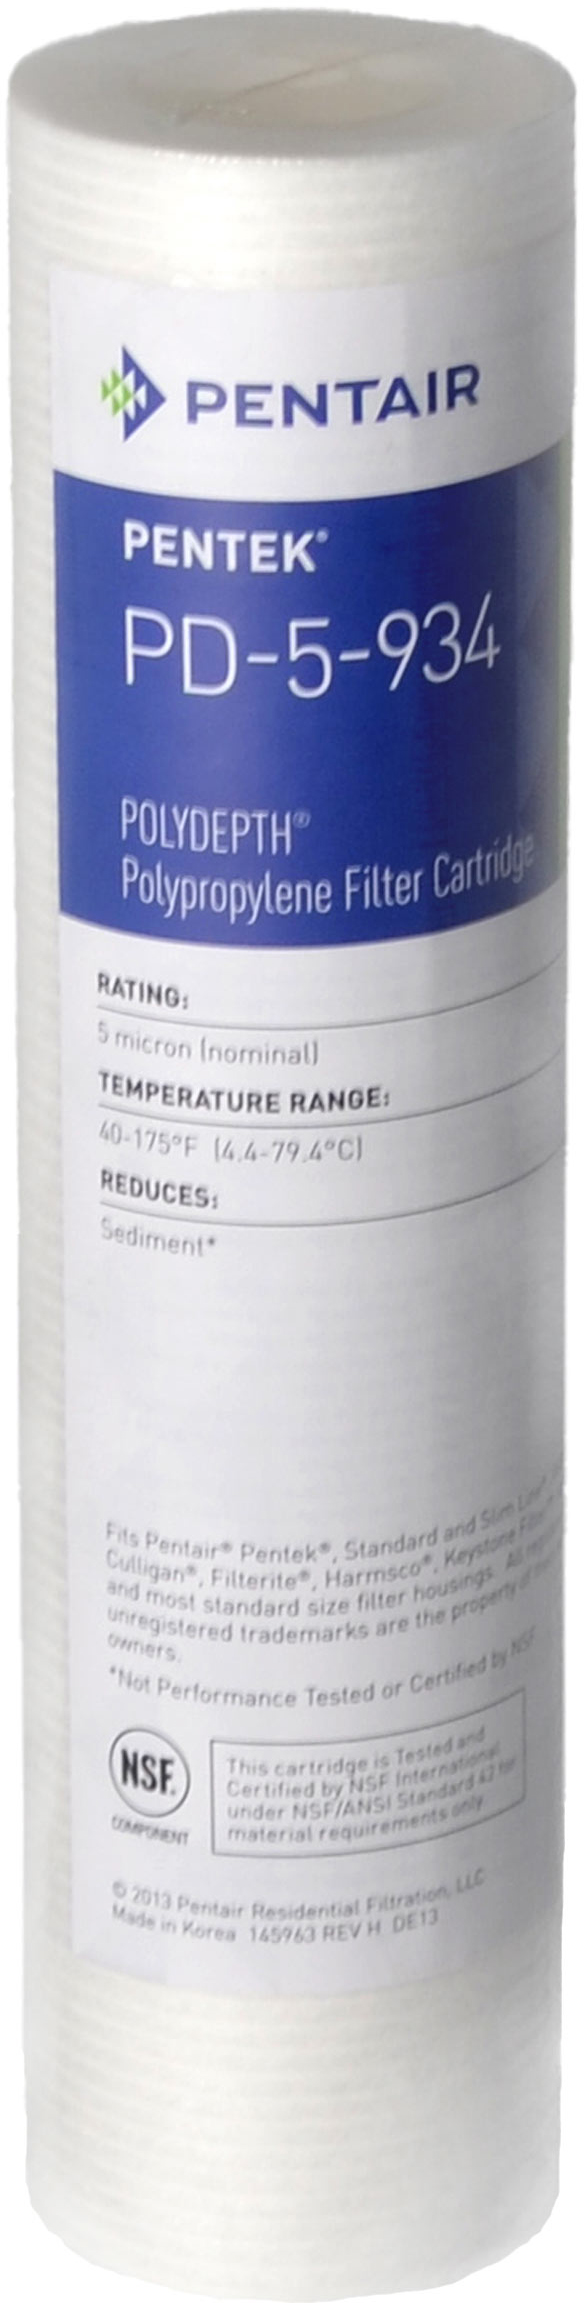 Картридж для горячей воды Pentek PD-5-934 Polydepth (155749-43)